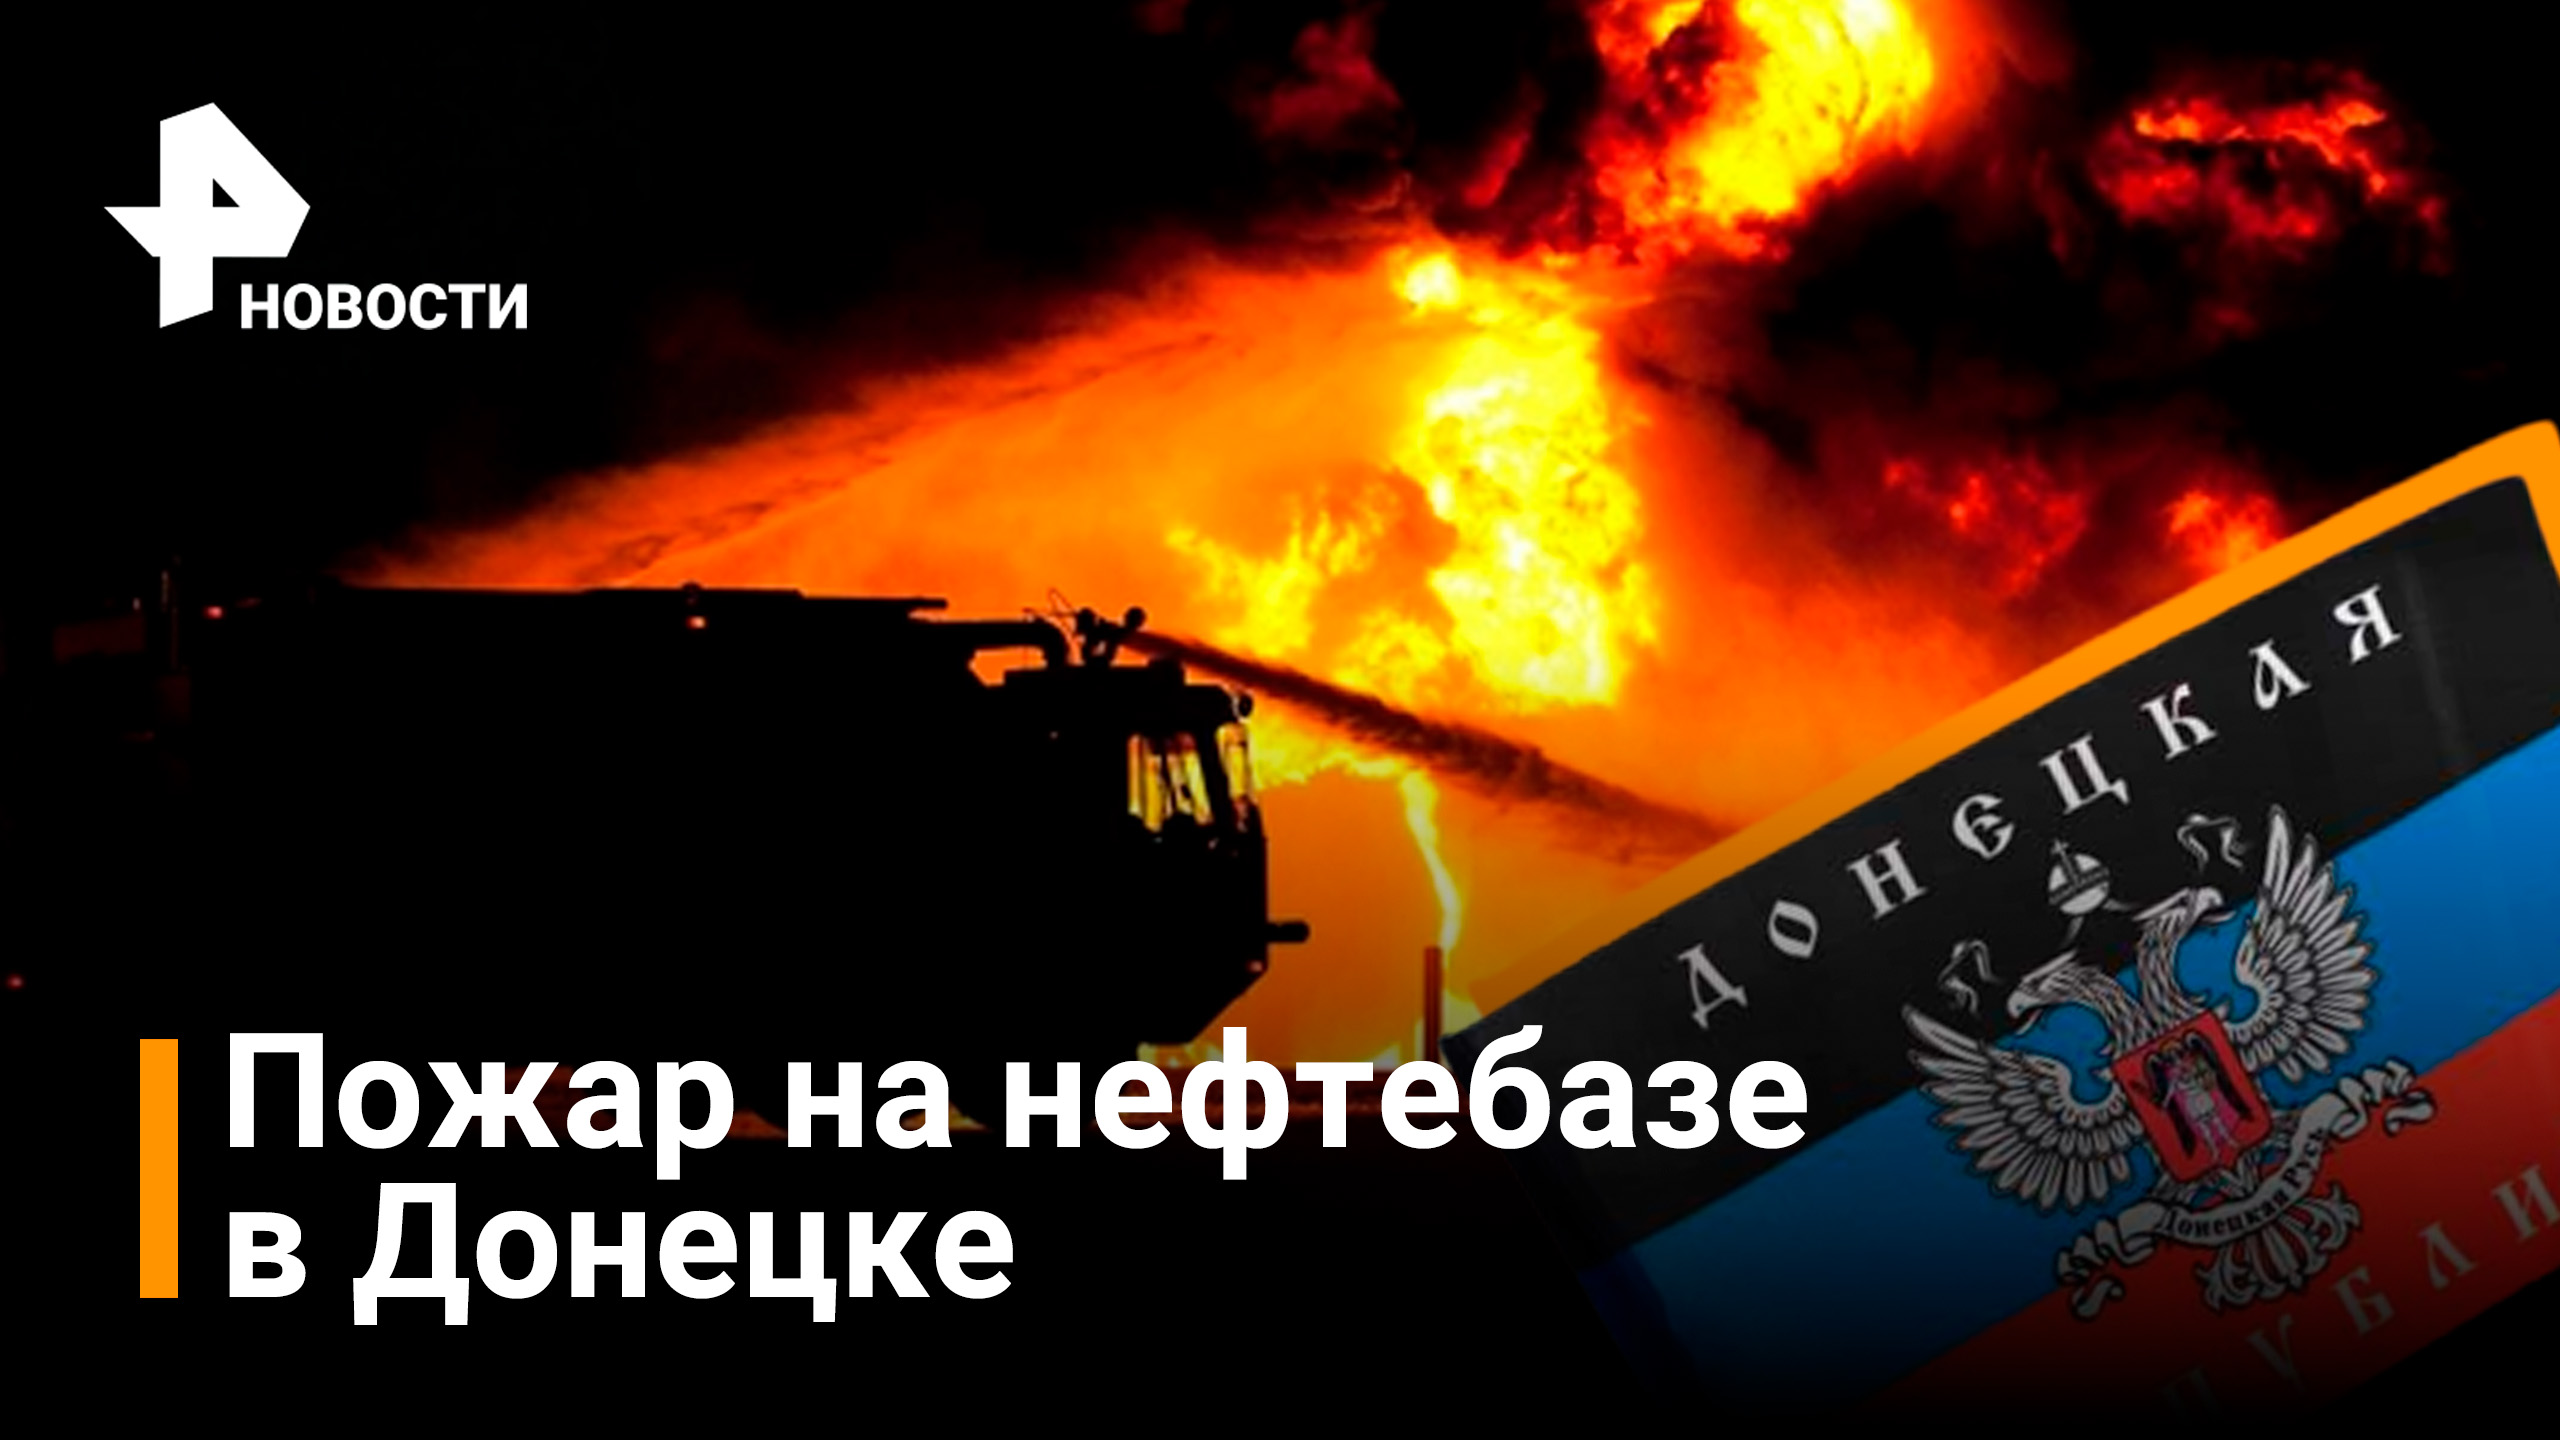 В Донецке на нефтебазе вспыхнул пожар / Новости РЕН